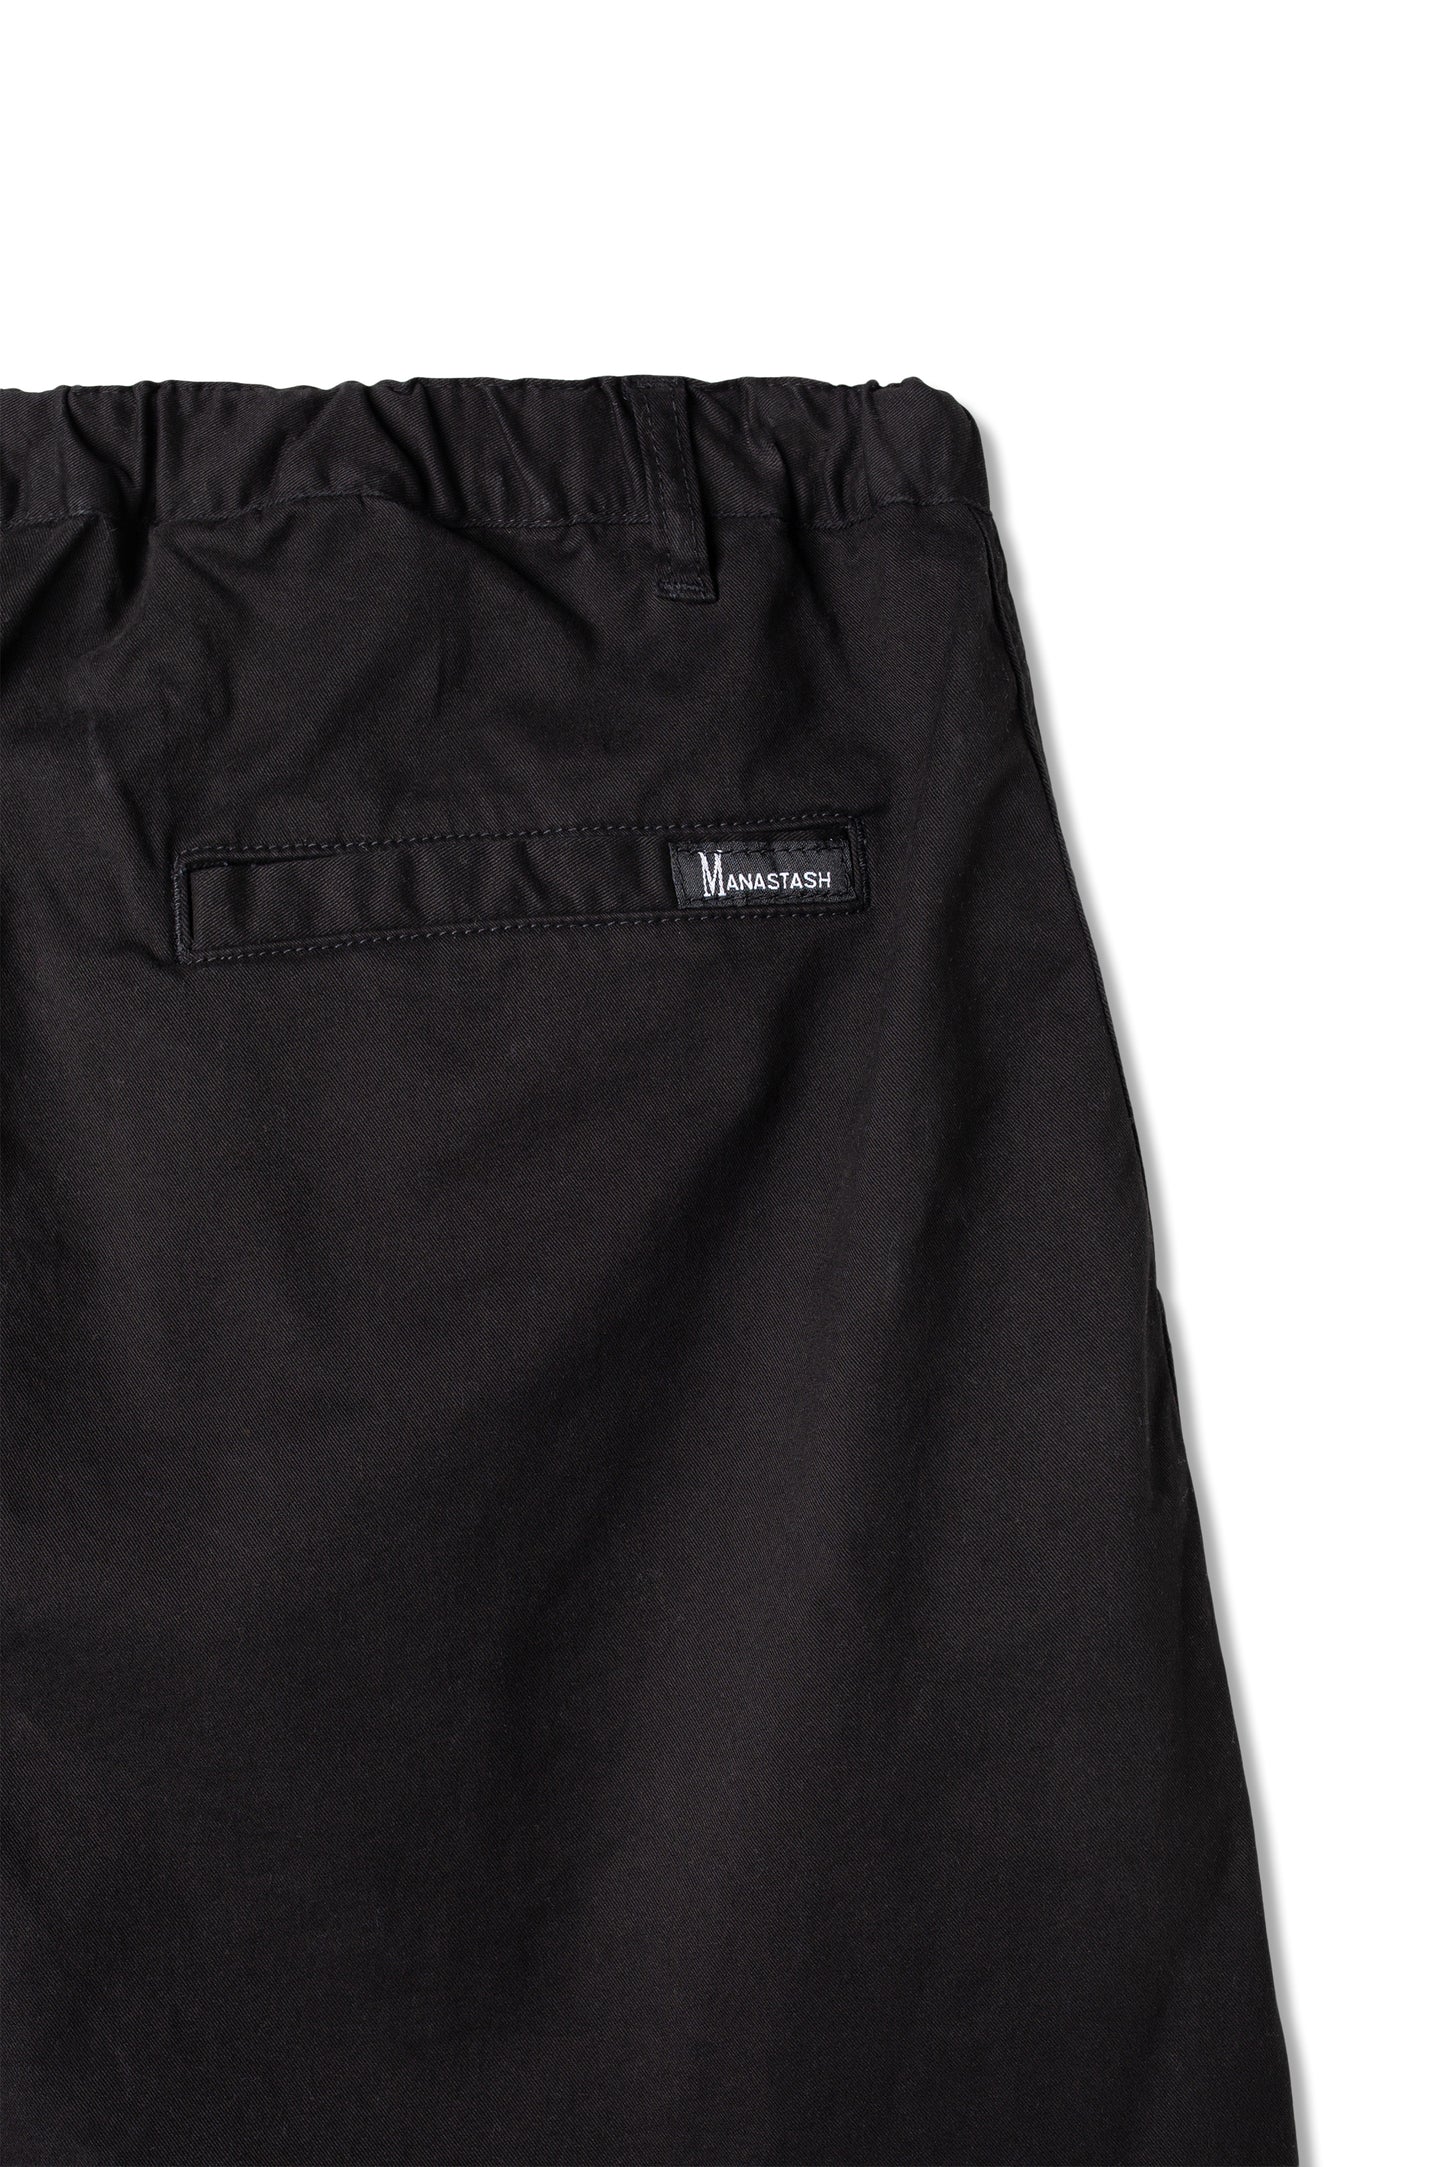 Flex Climber Wide Shorts (Black)